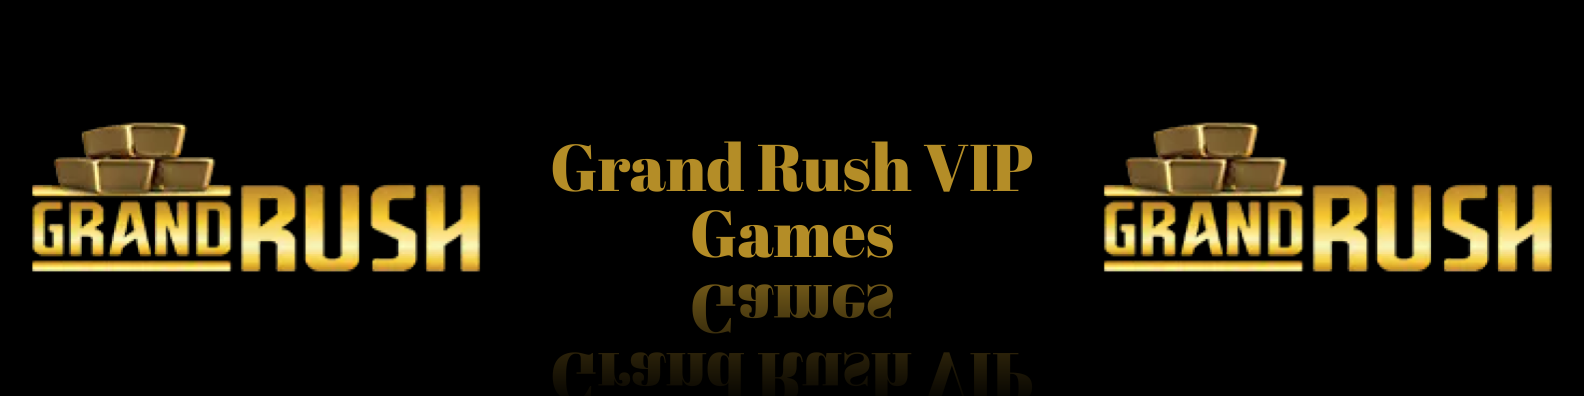 Grand Rush VIP Games